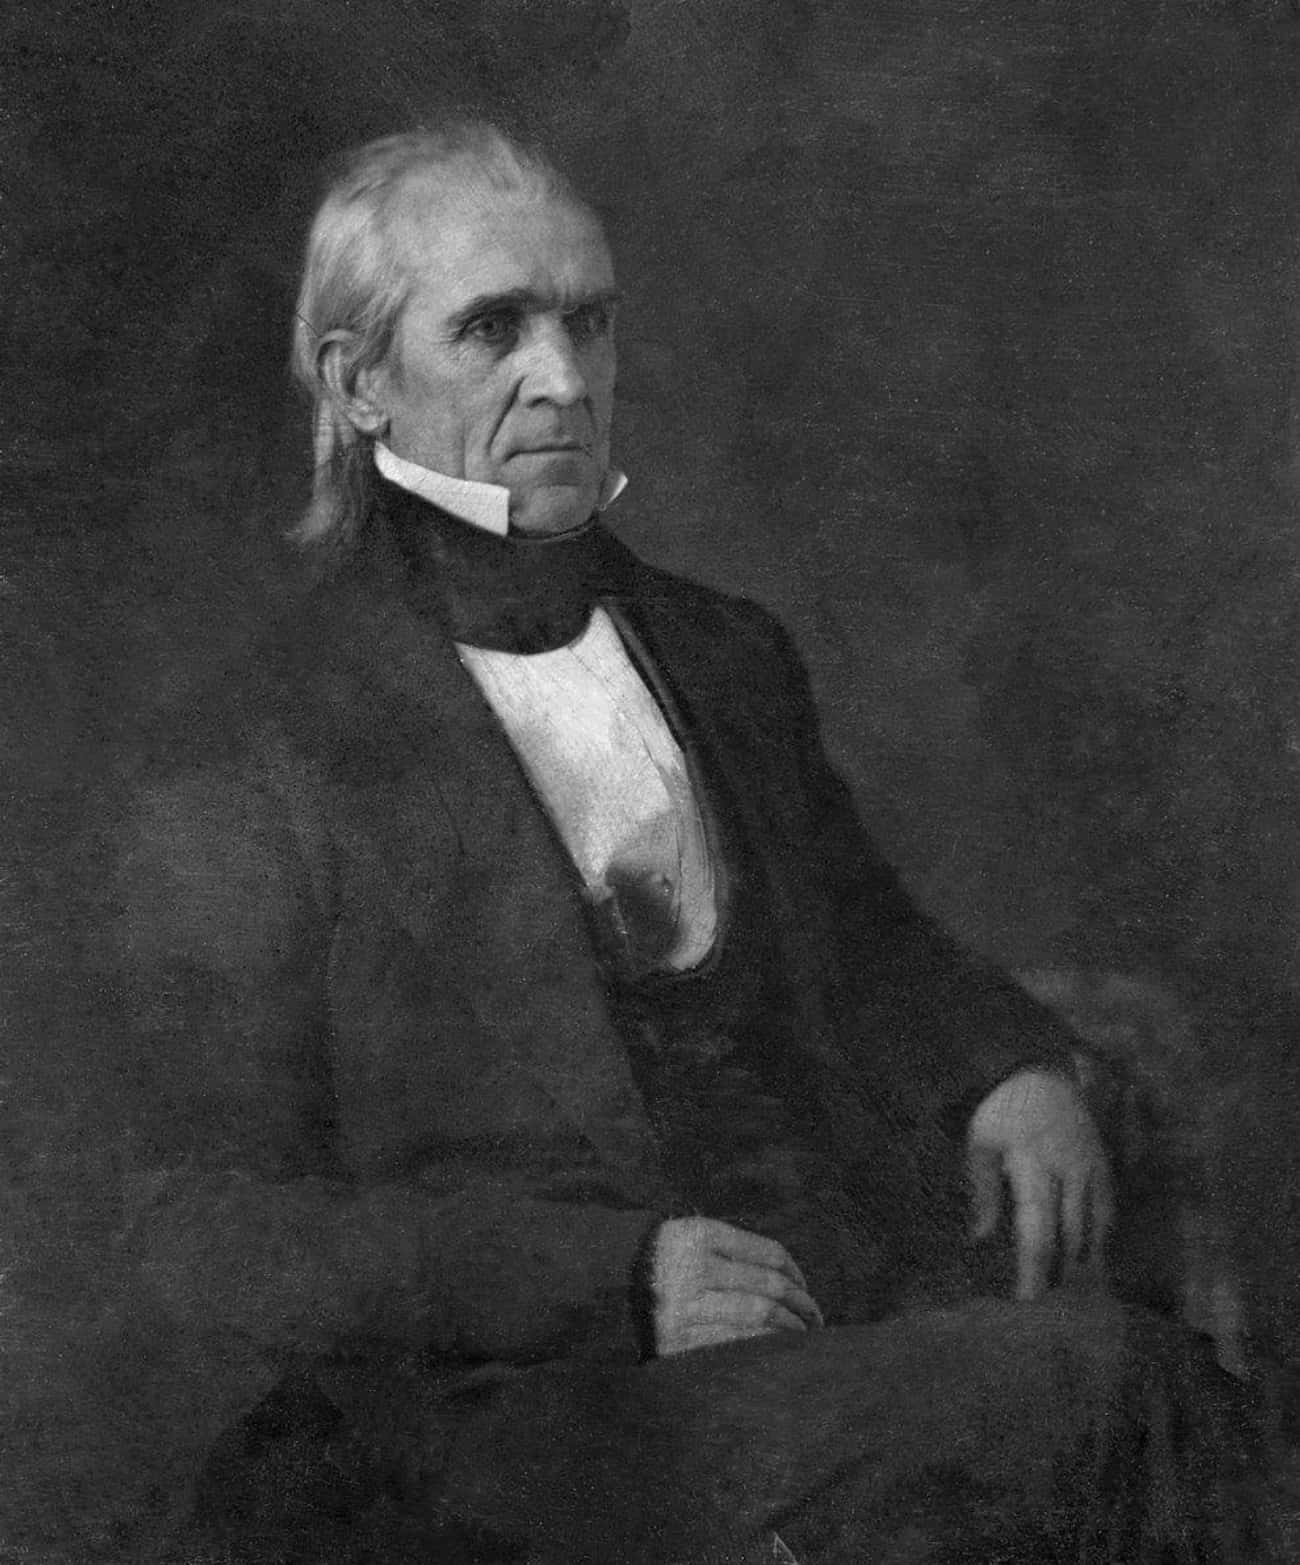 James K. Polk, Feb. 14, 1849 (Died Of Cholera On June 15, 1849)